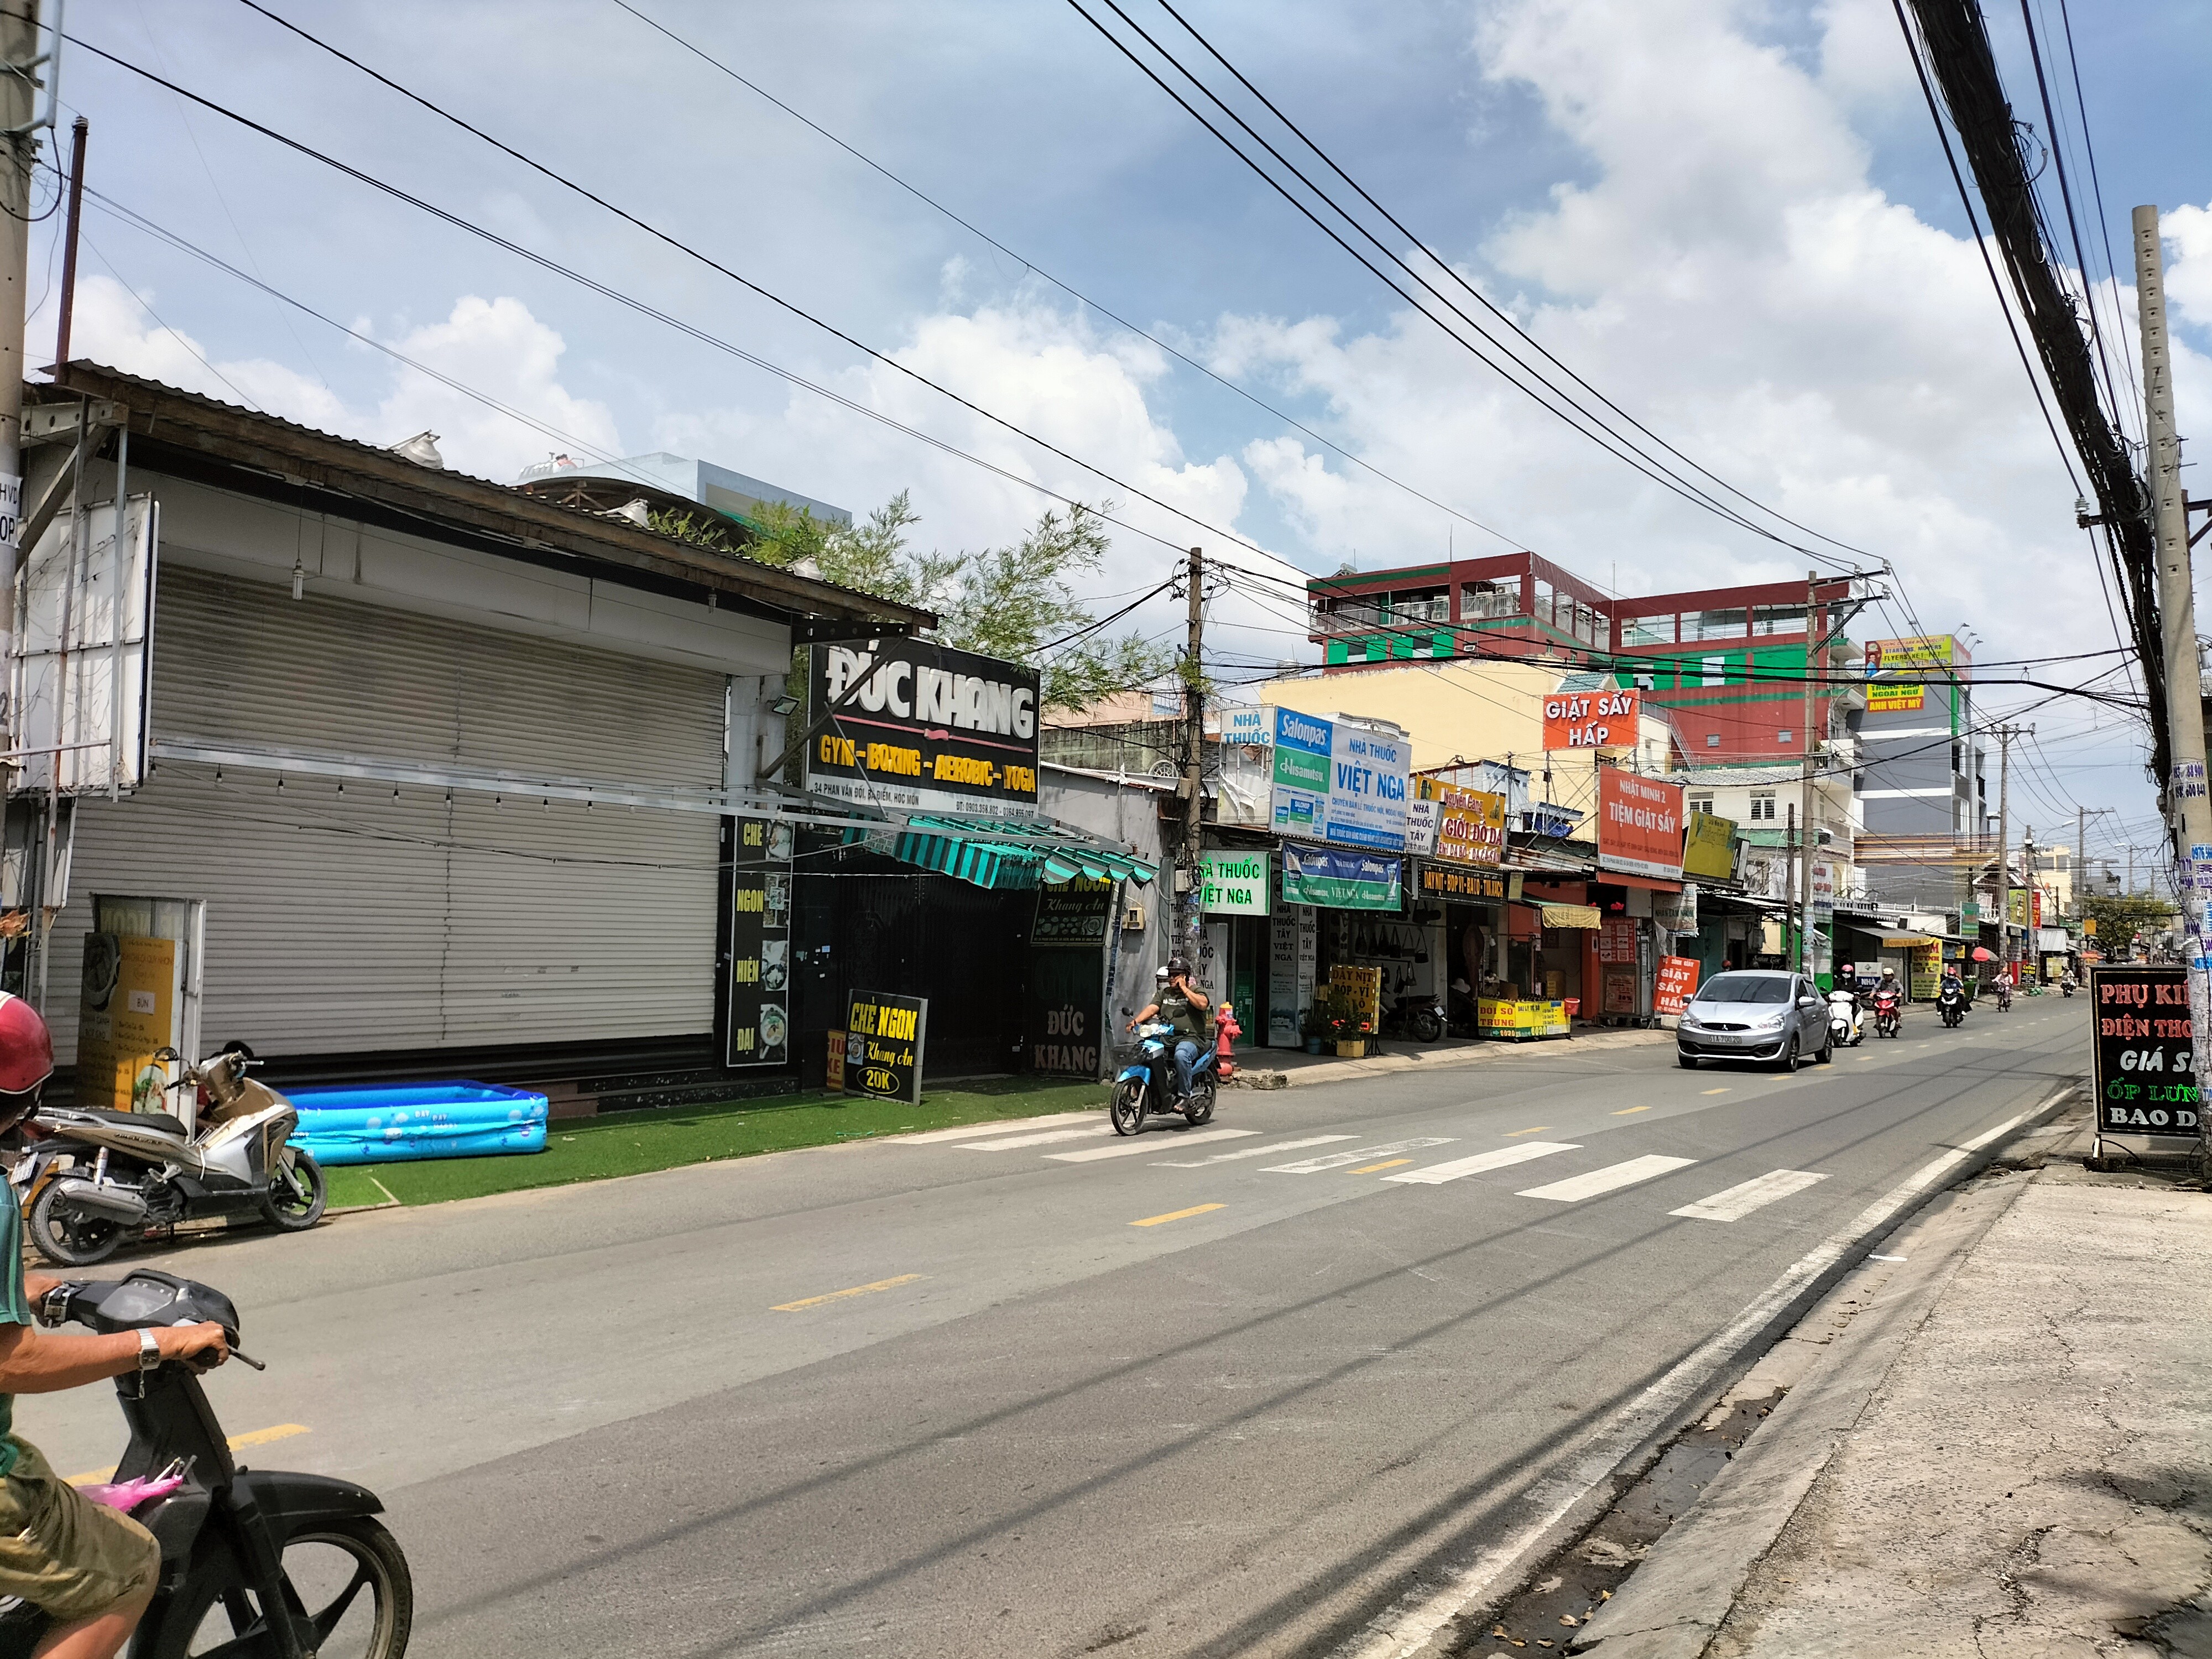 Bán nhà mặt tiền Phan Văn Đối, đường đẹp nhộn nhịp kinh doanh đa ngành nghề, kết nối quốc lộ 1A từ 2